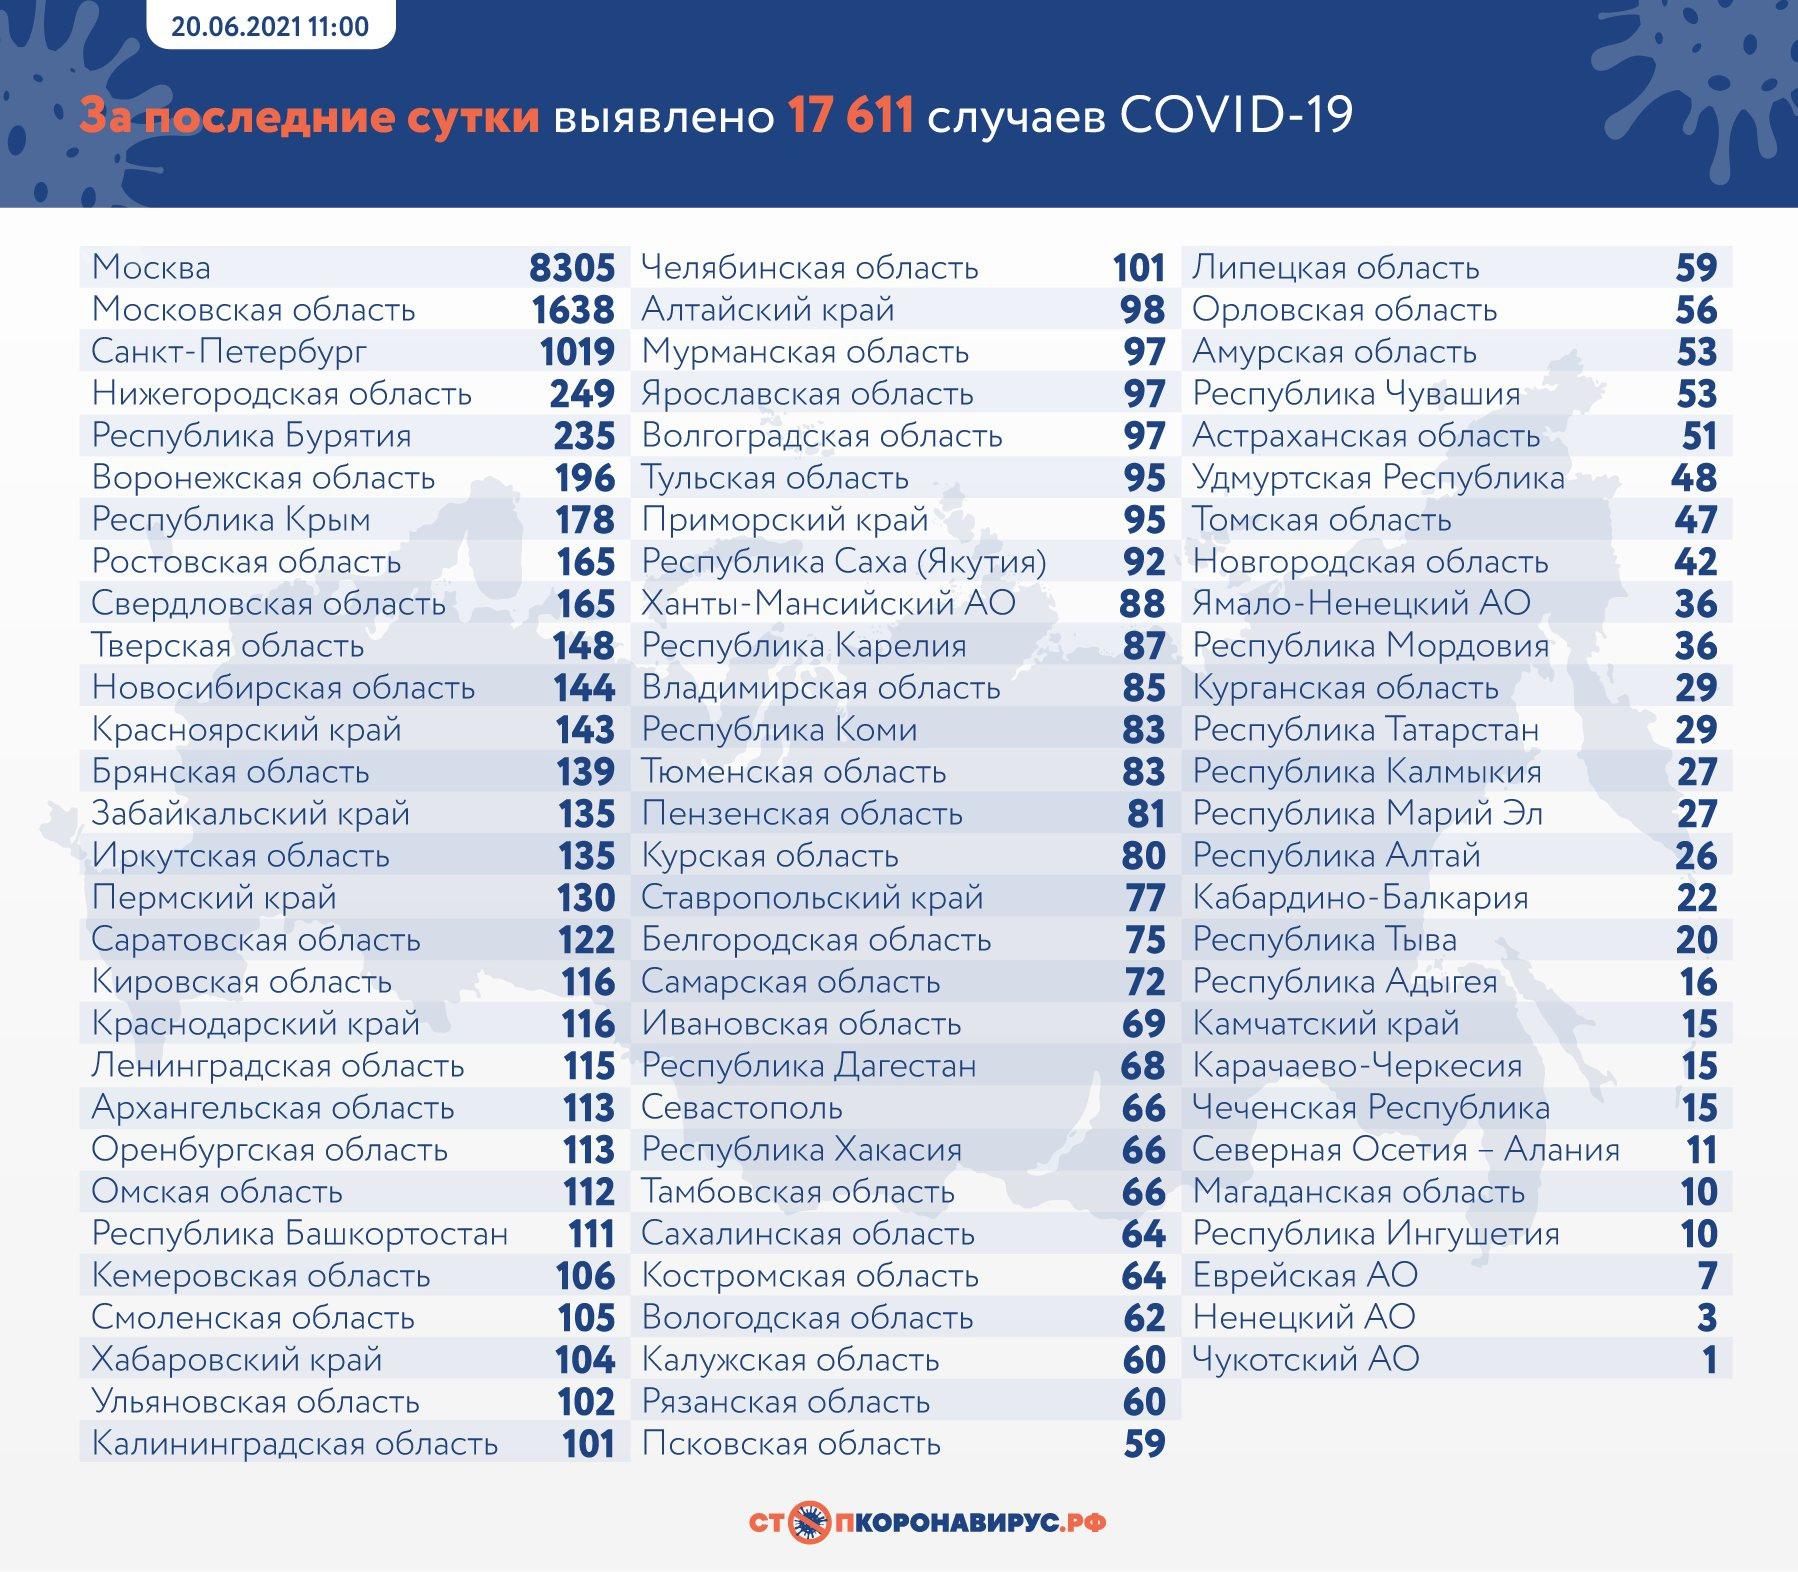 Фото 17 611 новых случаев заражения коронавирусом выявили в России за сутки 2